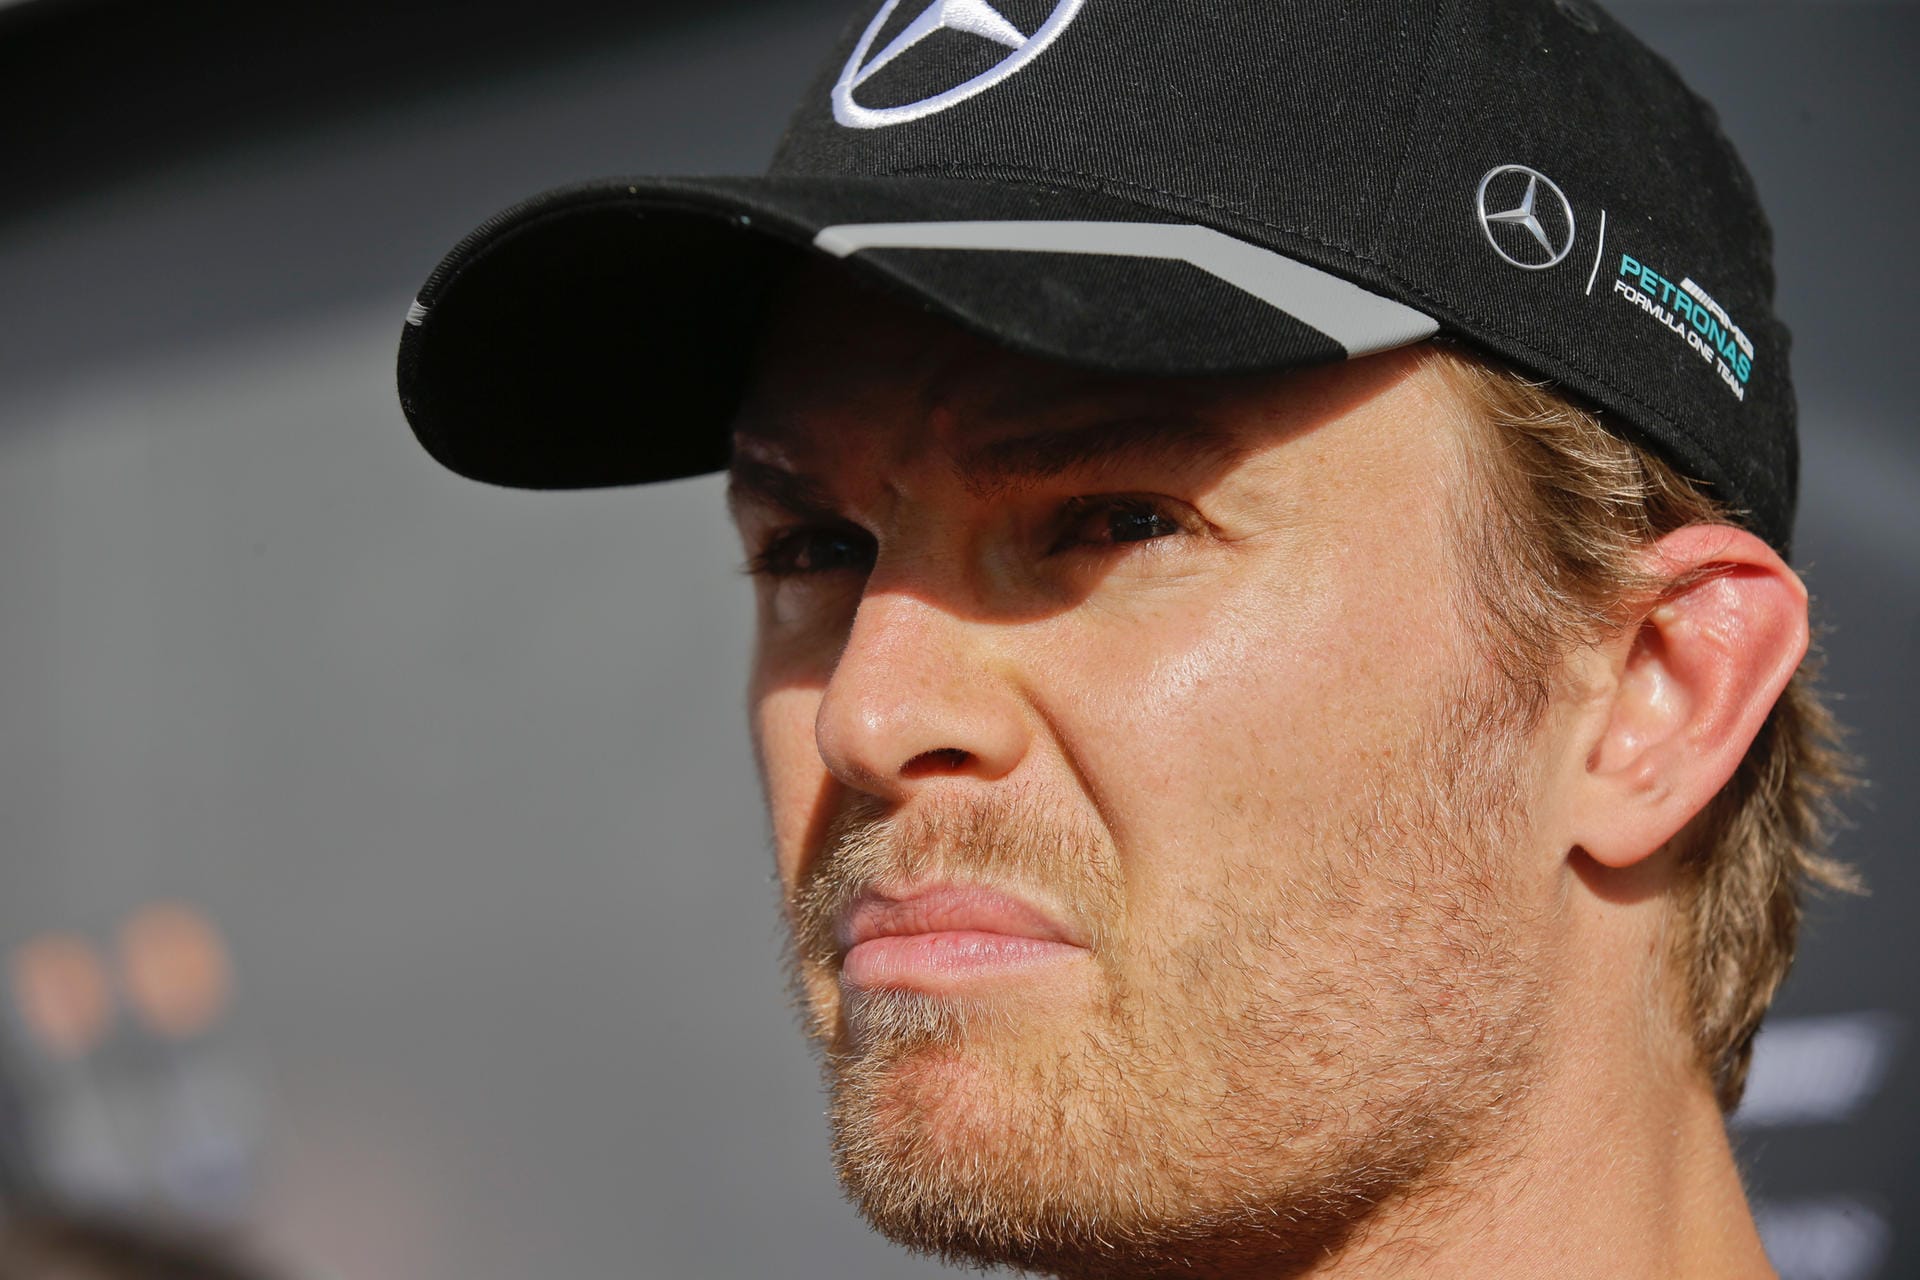 Skeptischer Blick: Der WM-Führende Nico Rosberg äußerte vor dem Rennen Sicherheitsbedenken wegen zu wenig Auslaufzonen.